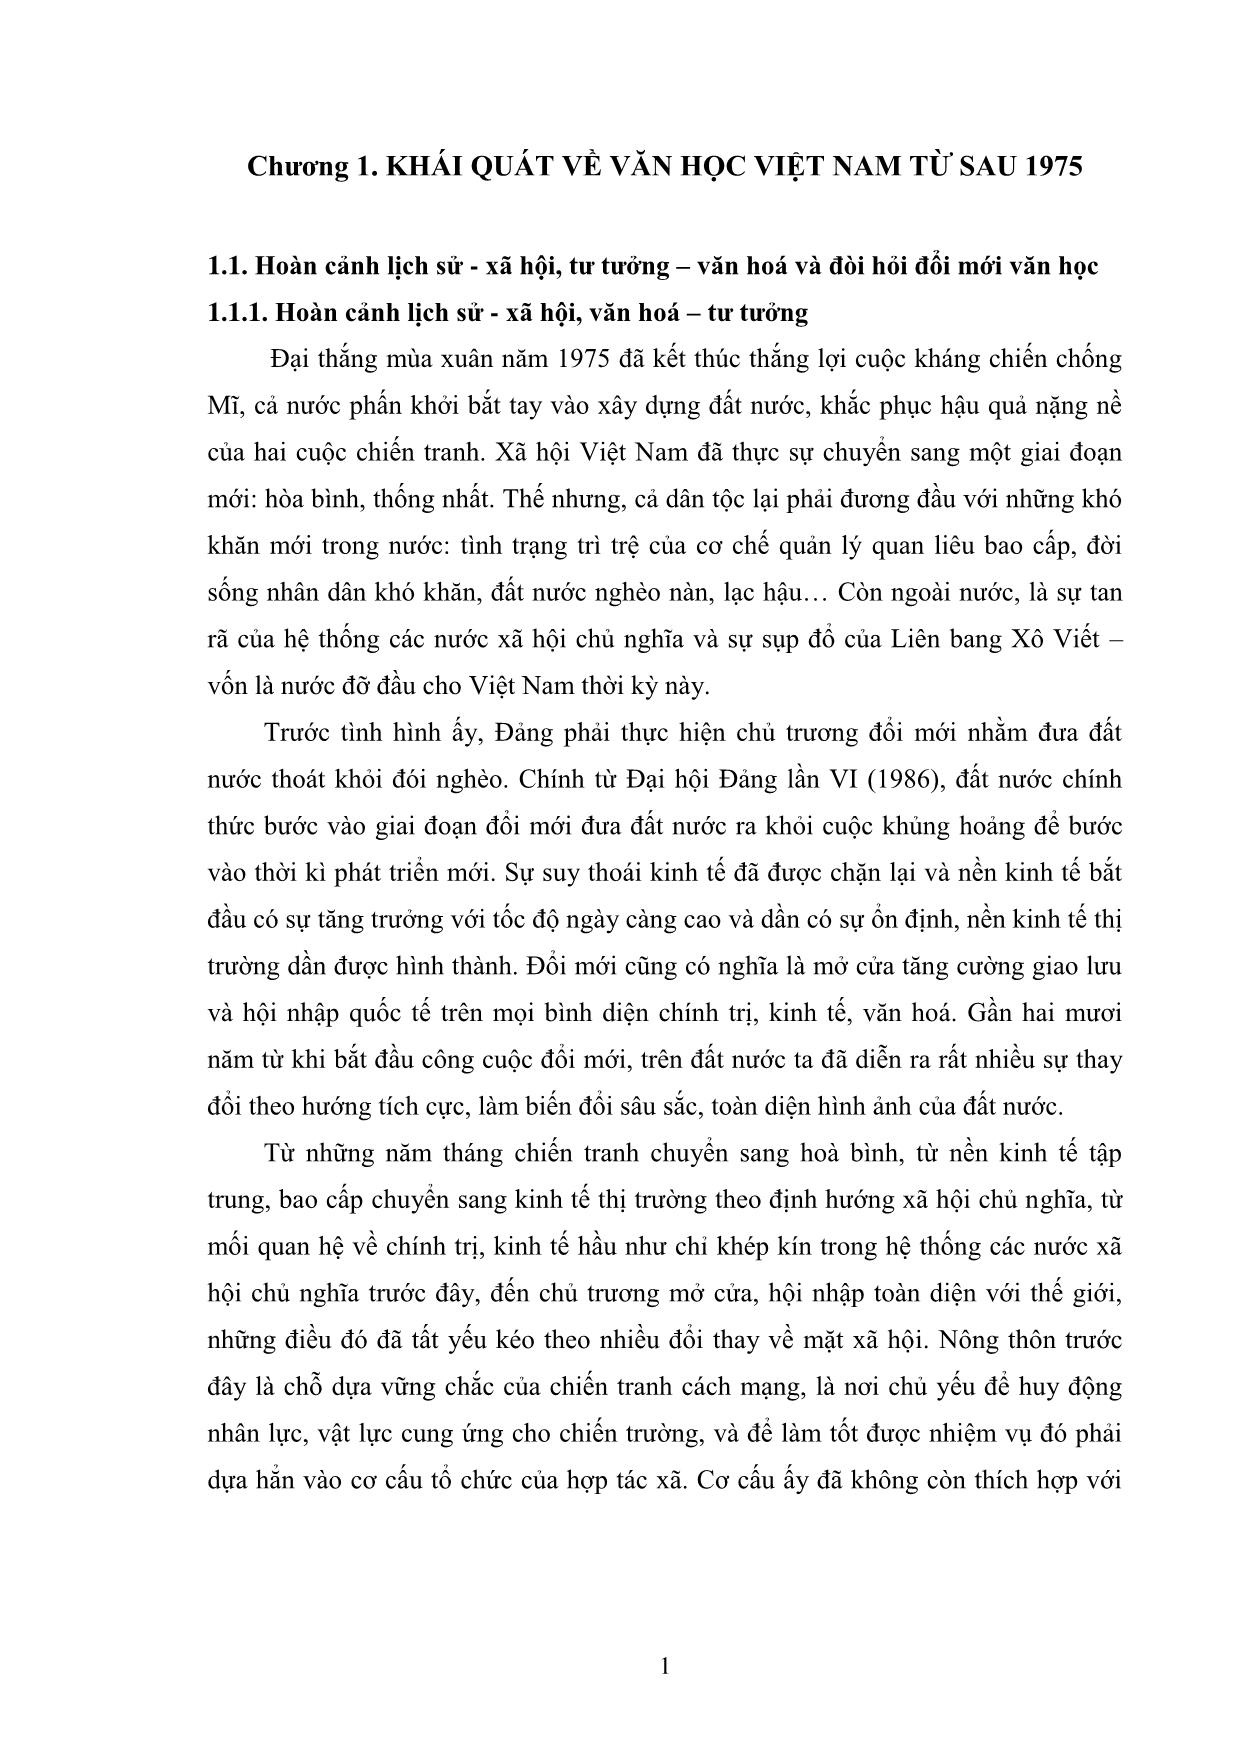 Giáo trình Văn học Việt Nam hiện đại 2B trang 4